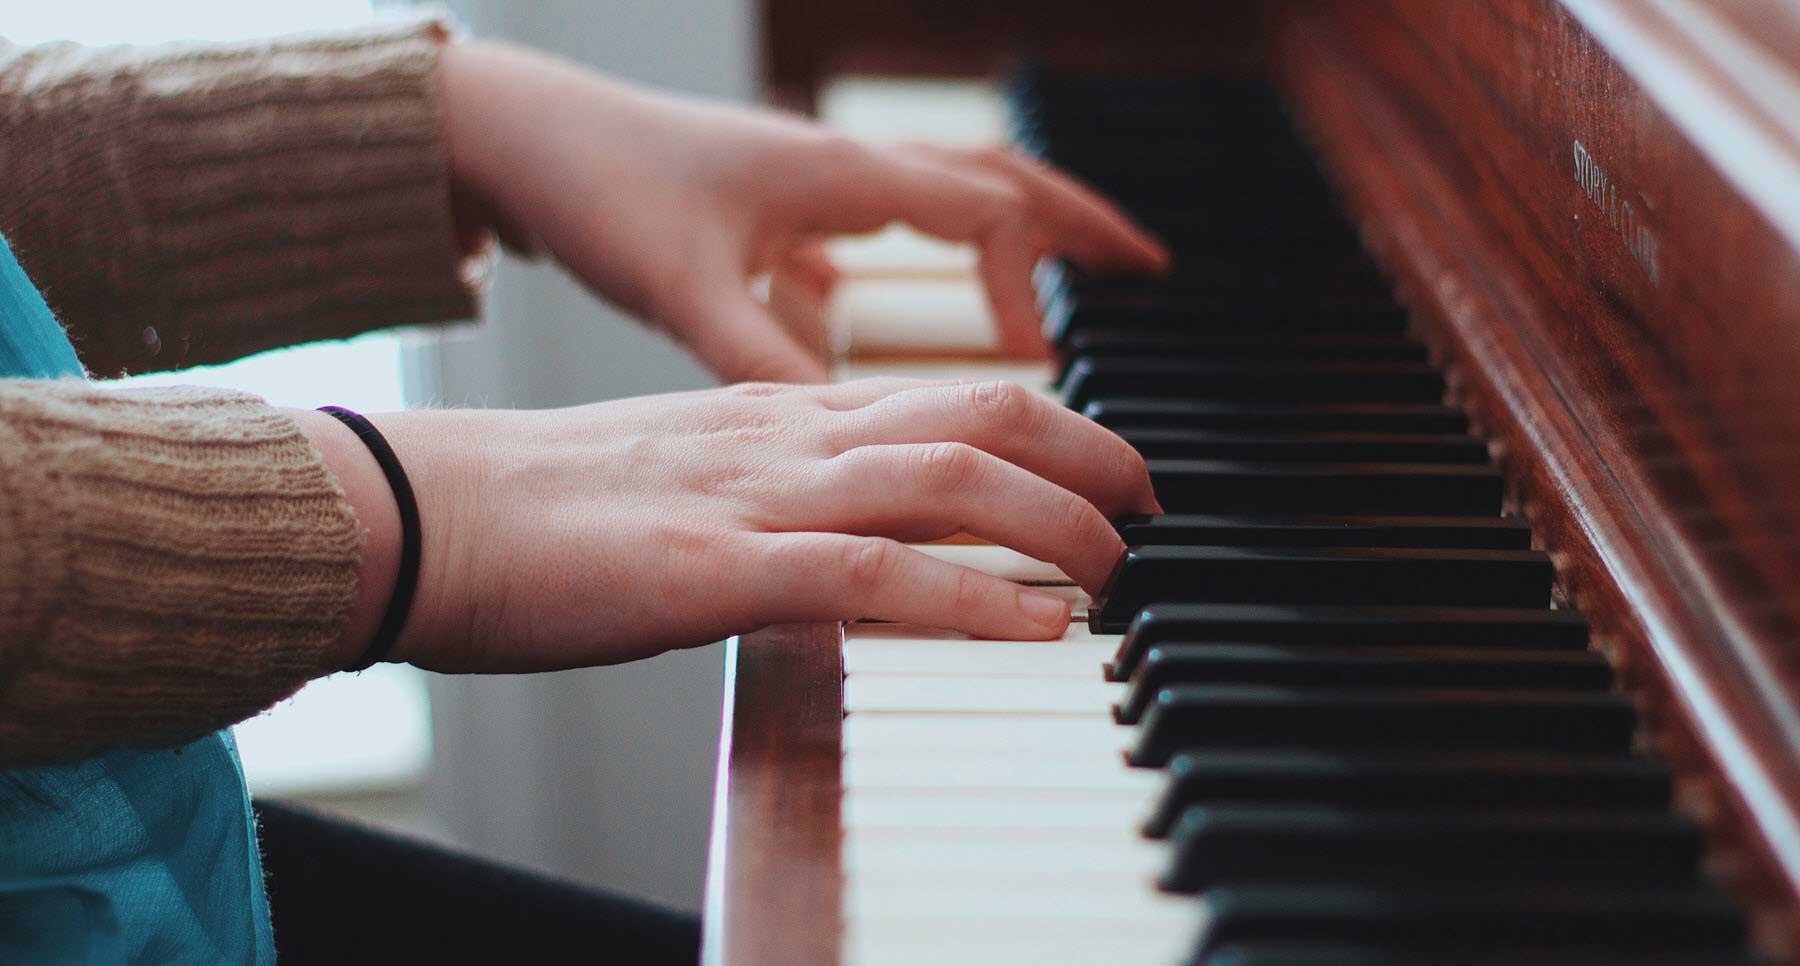 Woman Playing a Piano at Church